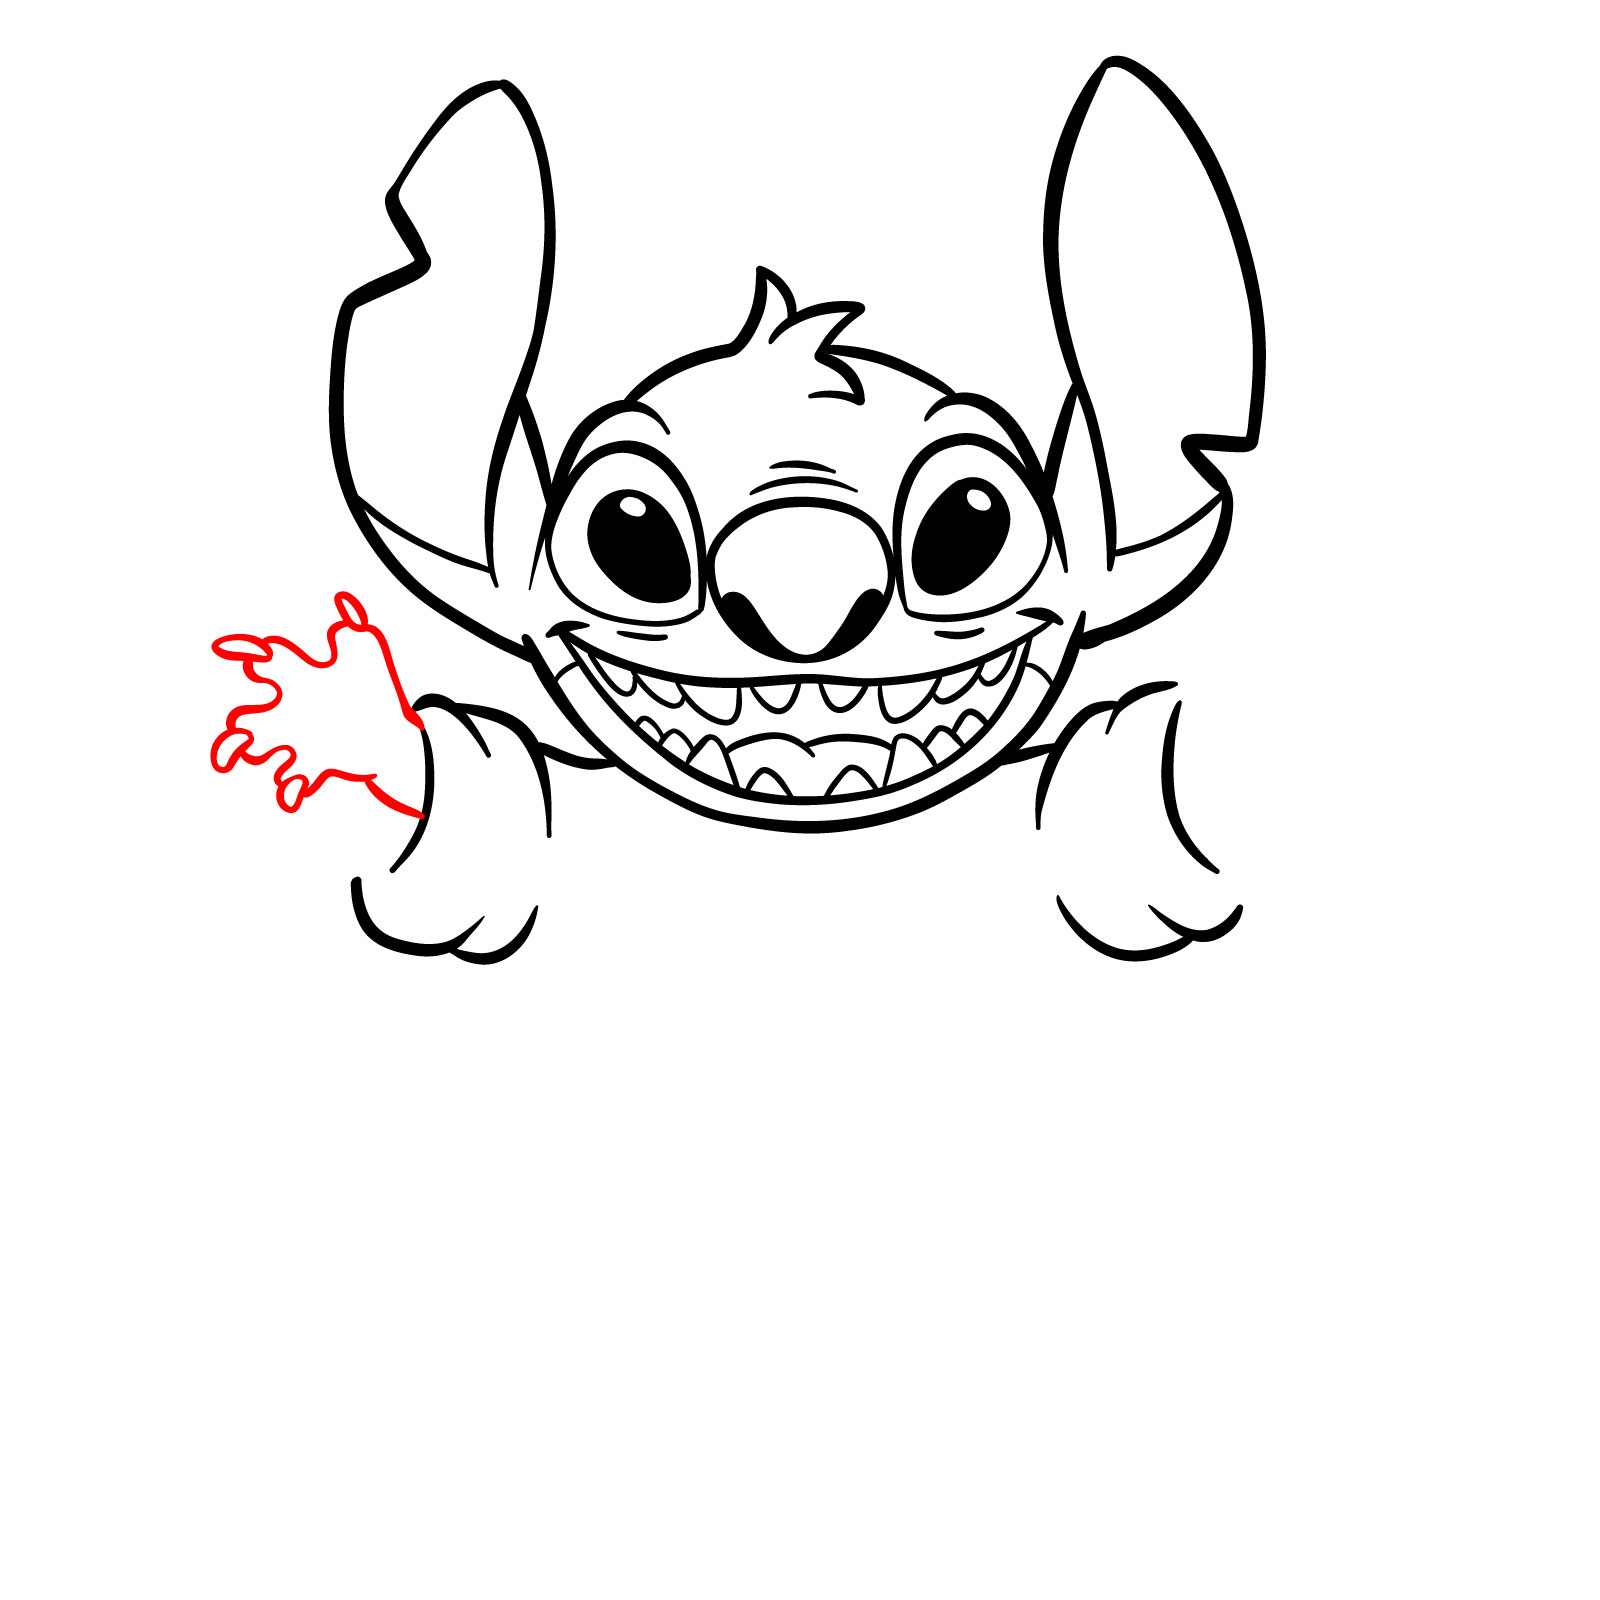 How to Draw Halloween Stitch with a jack-o'-lantern - step 17